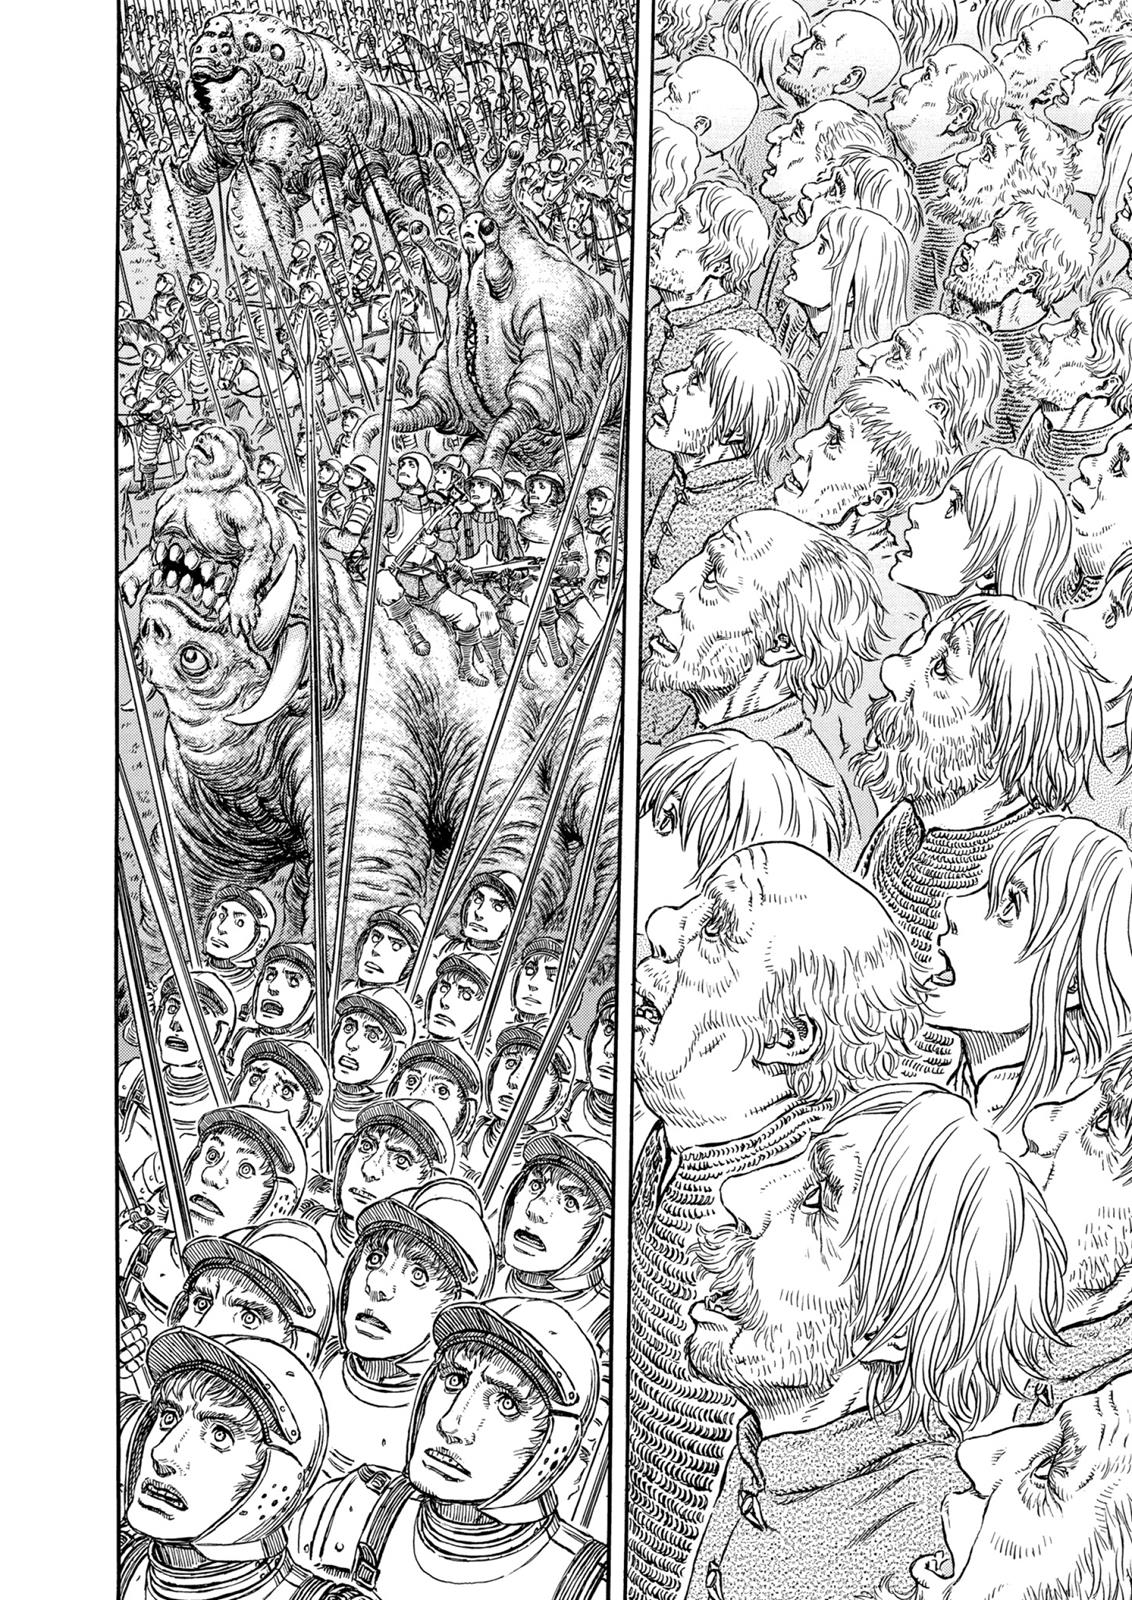 Berserk Manga Chapter 304 image 13